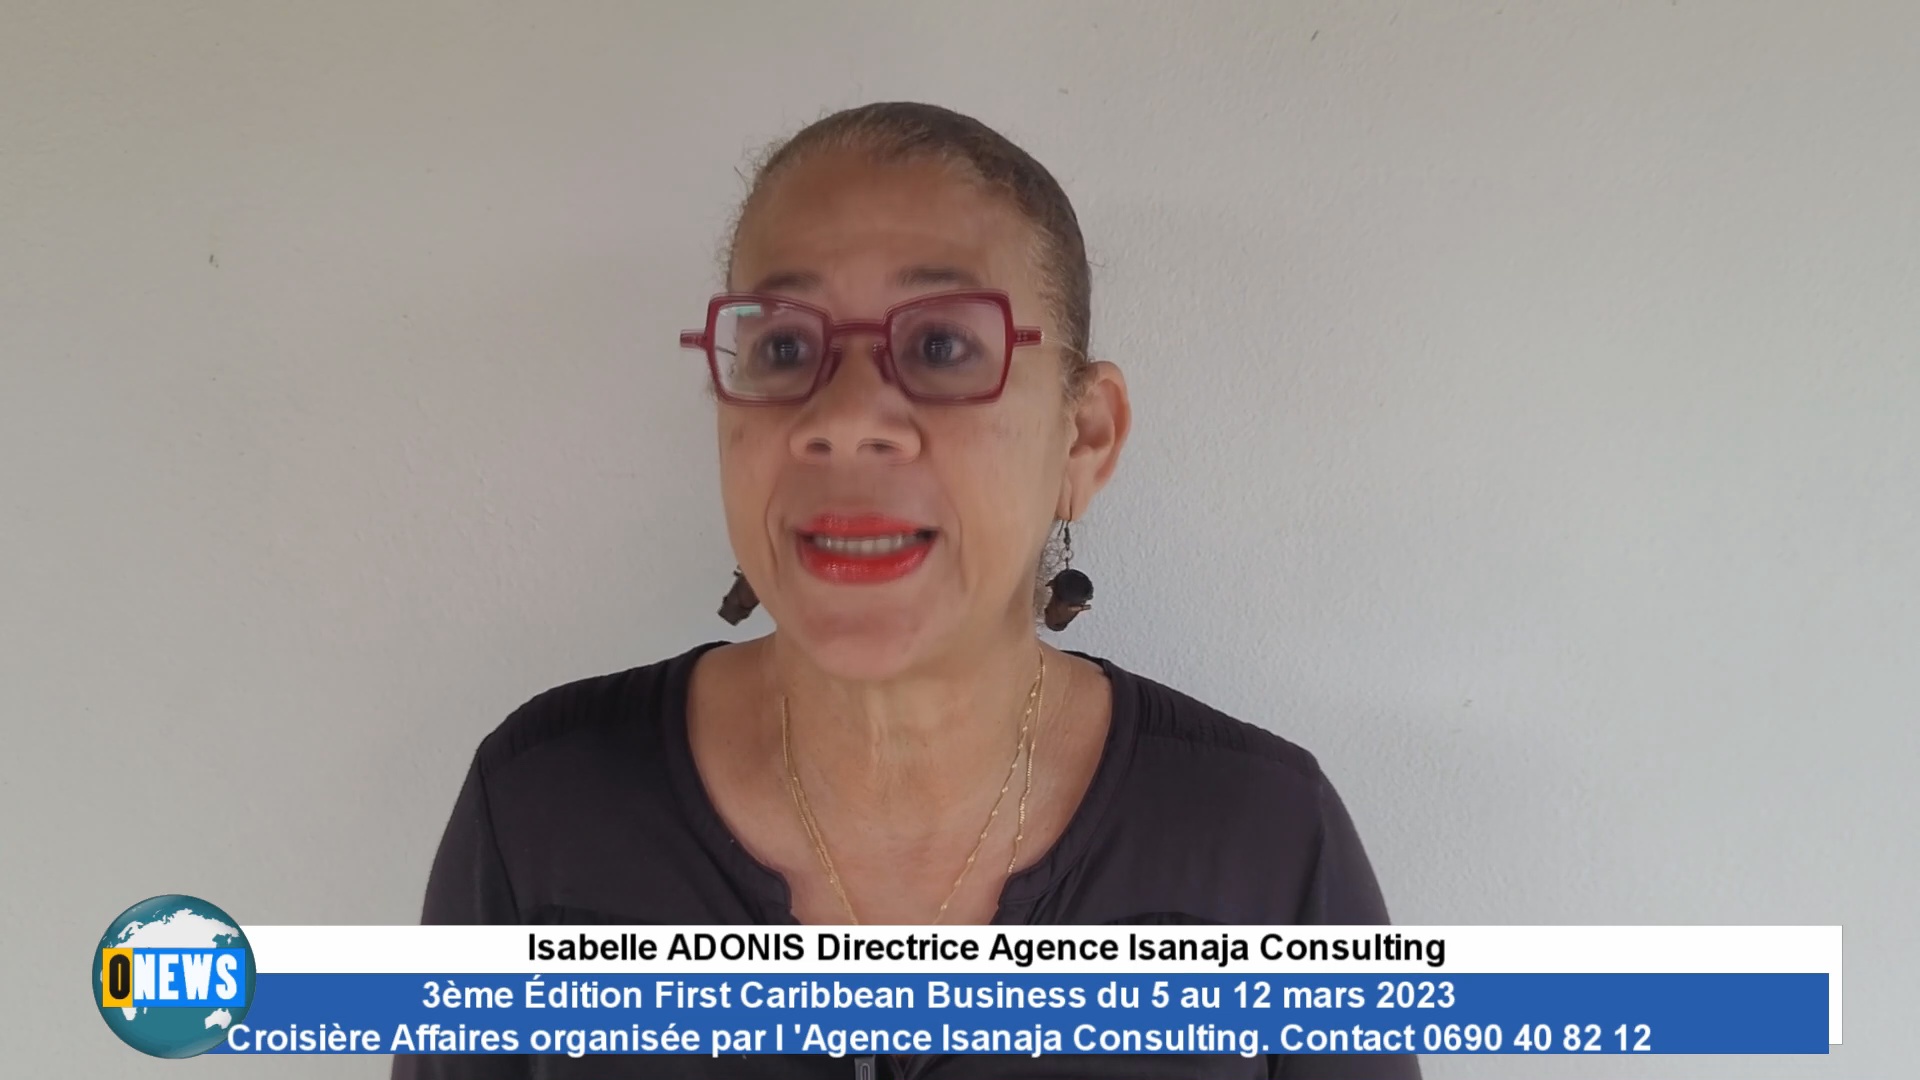 [Vidéo] 3ème Édition First Caribbean Business du 5 au 12 mars 2023. Croisière affaires dans la Caraïbe